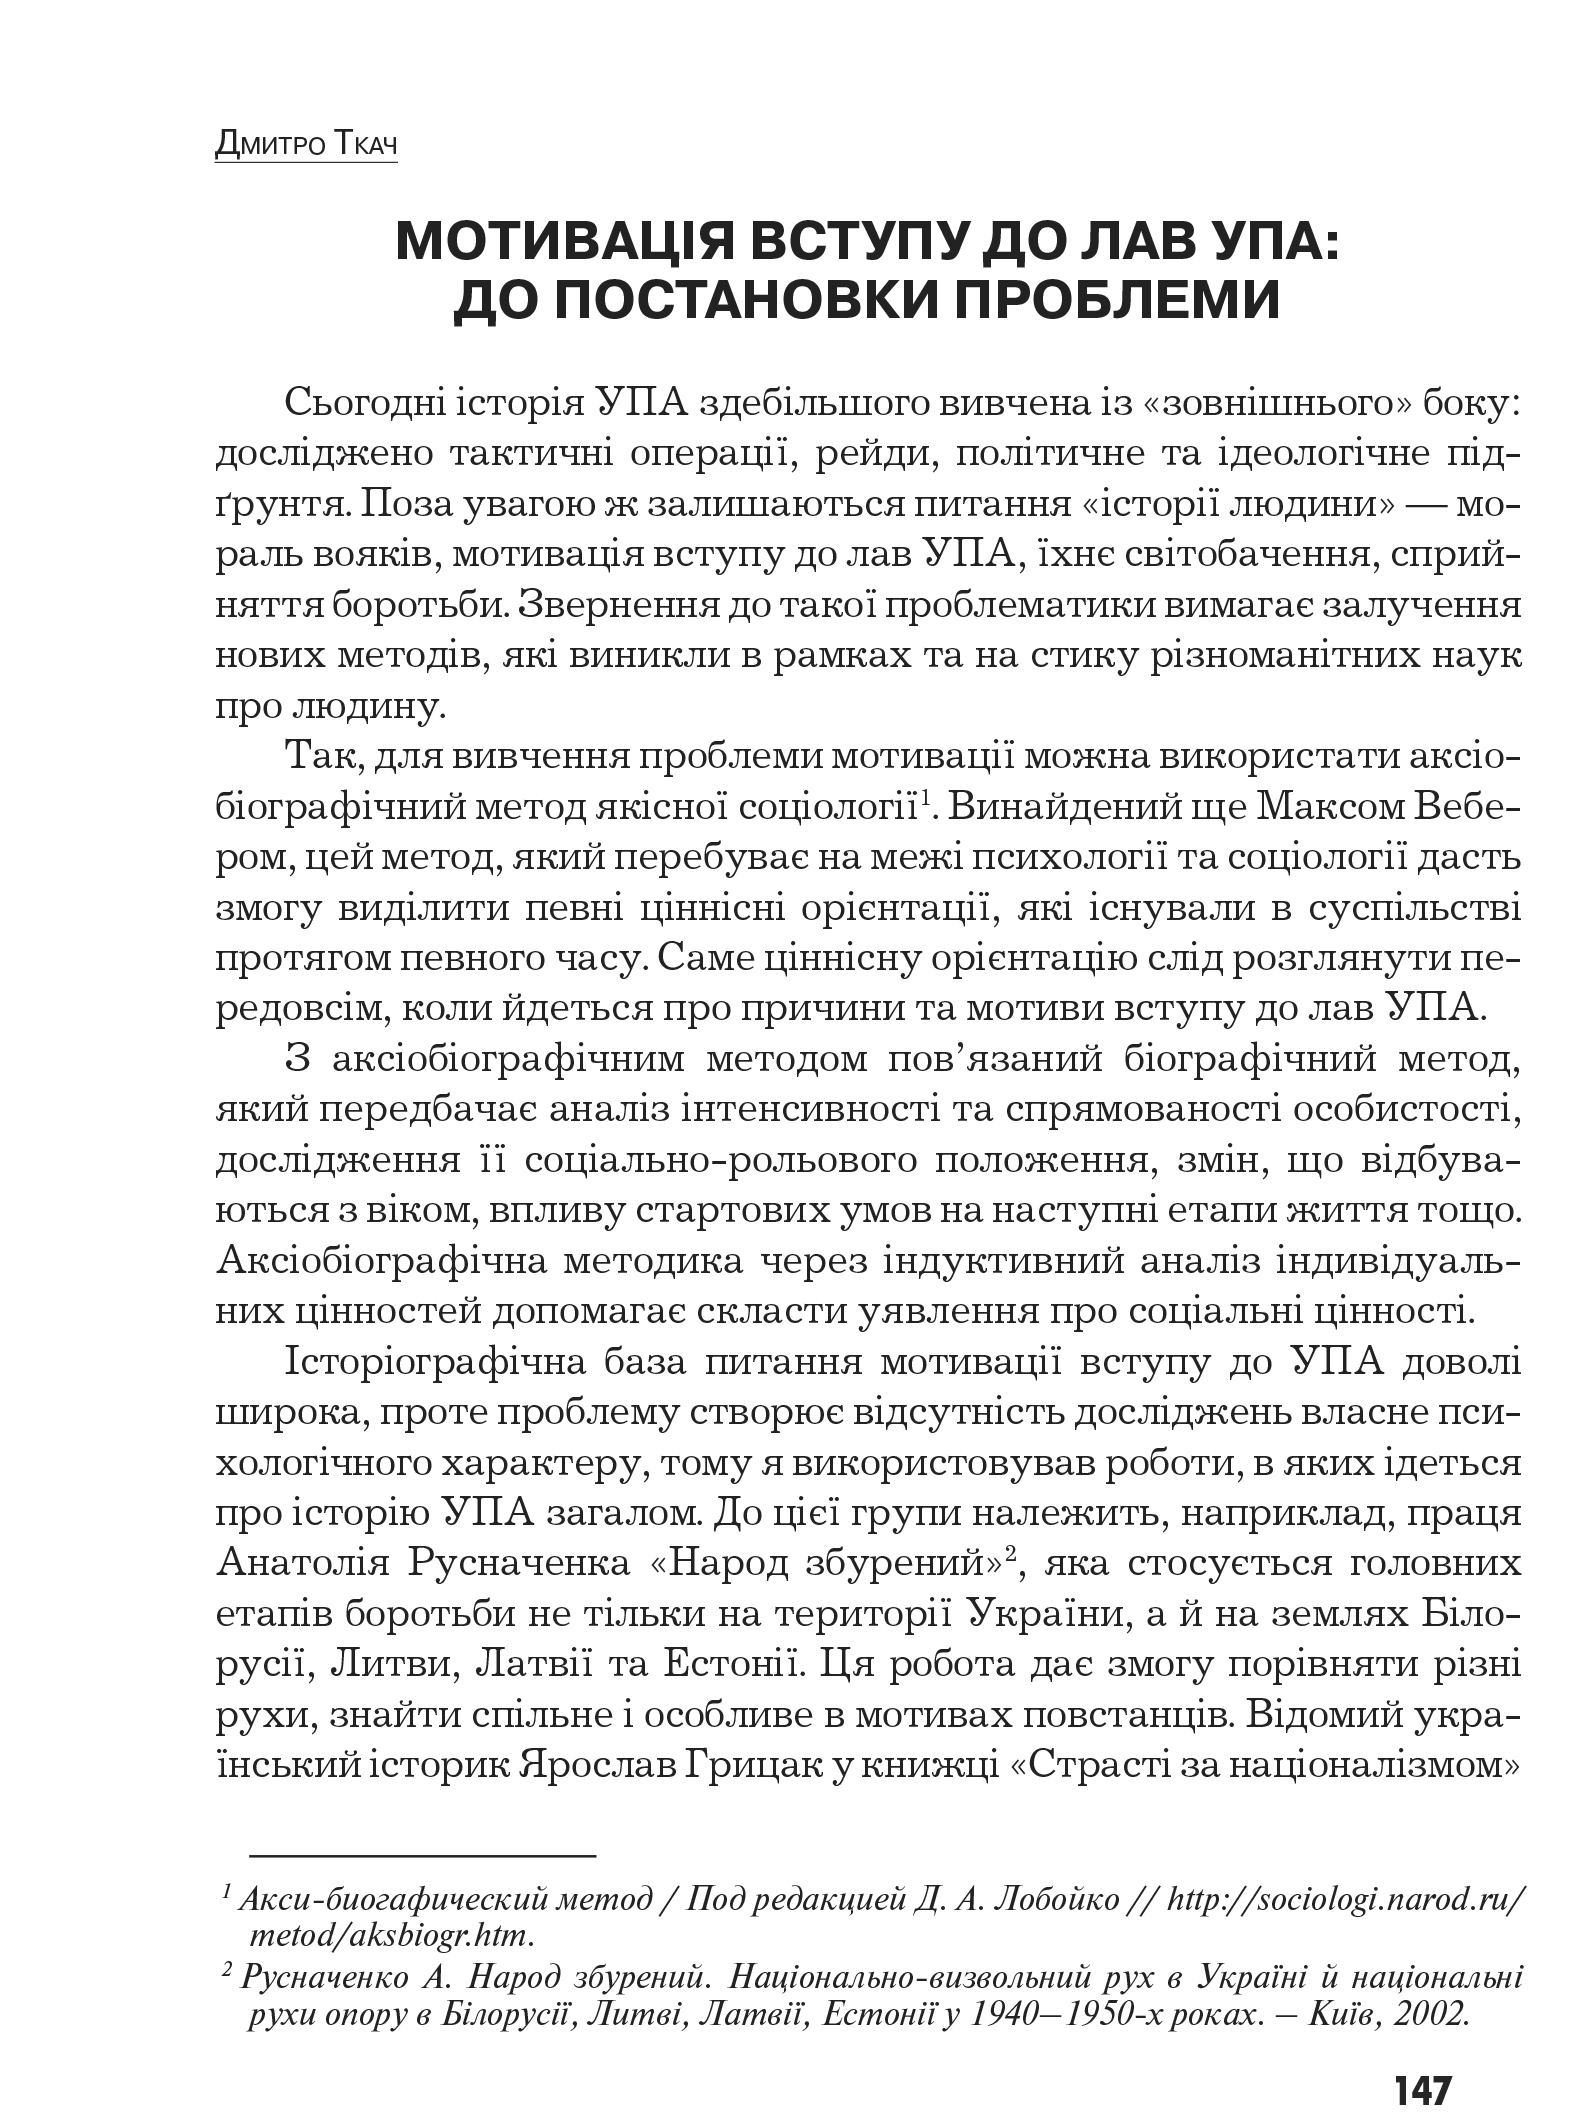 Український визвольний рух №9, ст. 147 - 156